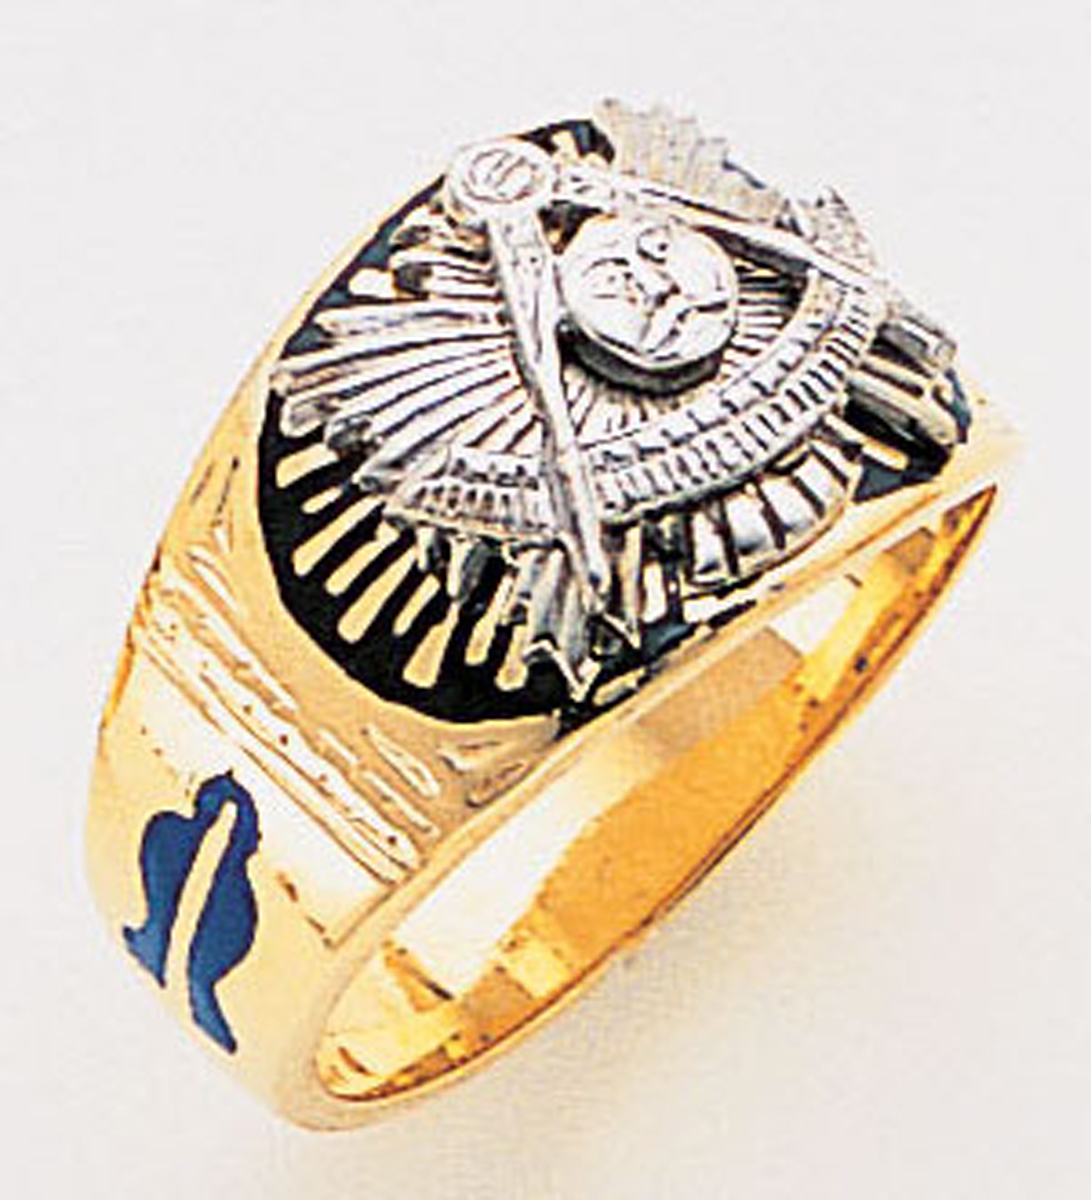 Masonic Past Master Ring Macoy Publishing Masonic Supply 3308